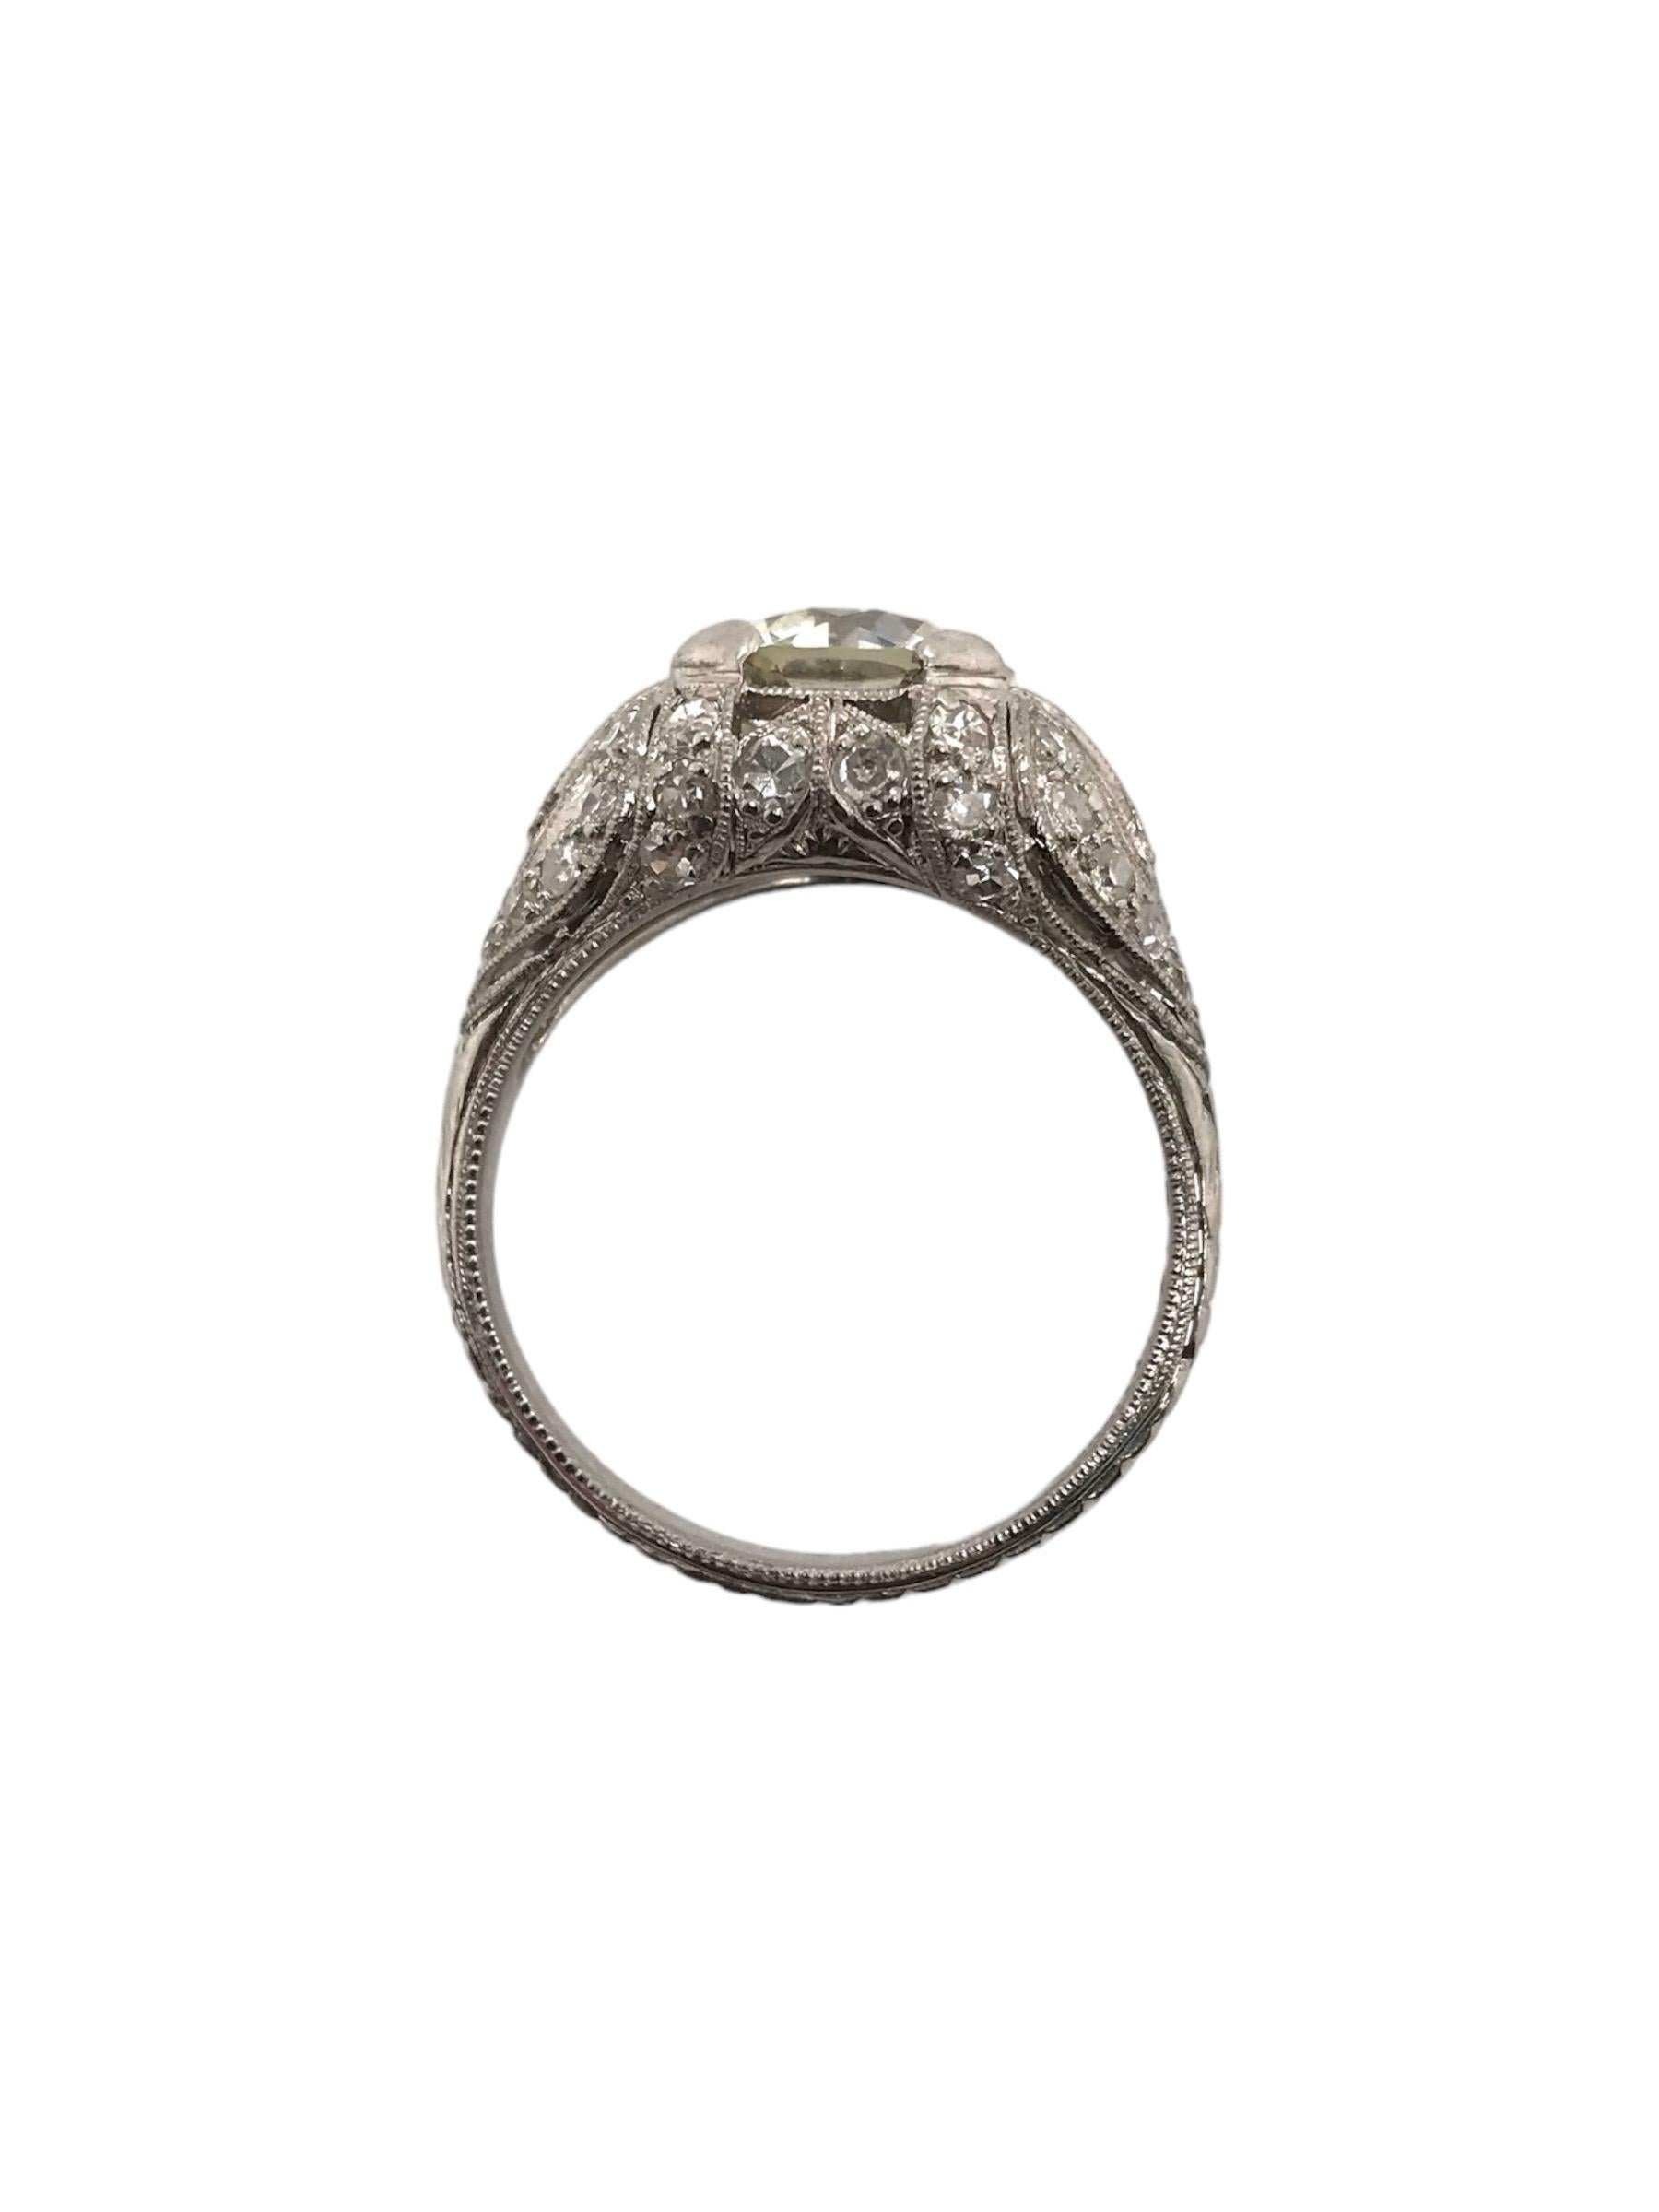 Art Deco 2.38 Carat Old European Cut Diamond Platinum Engagement Ring 1